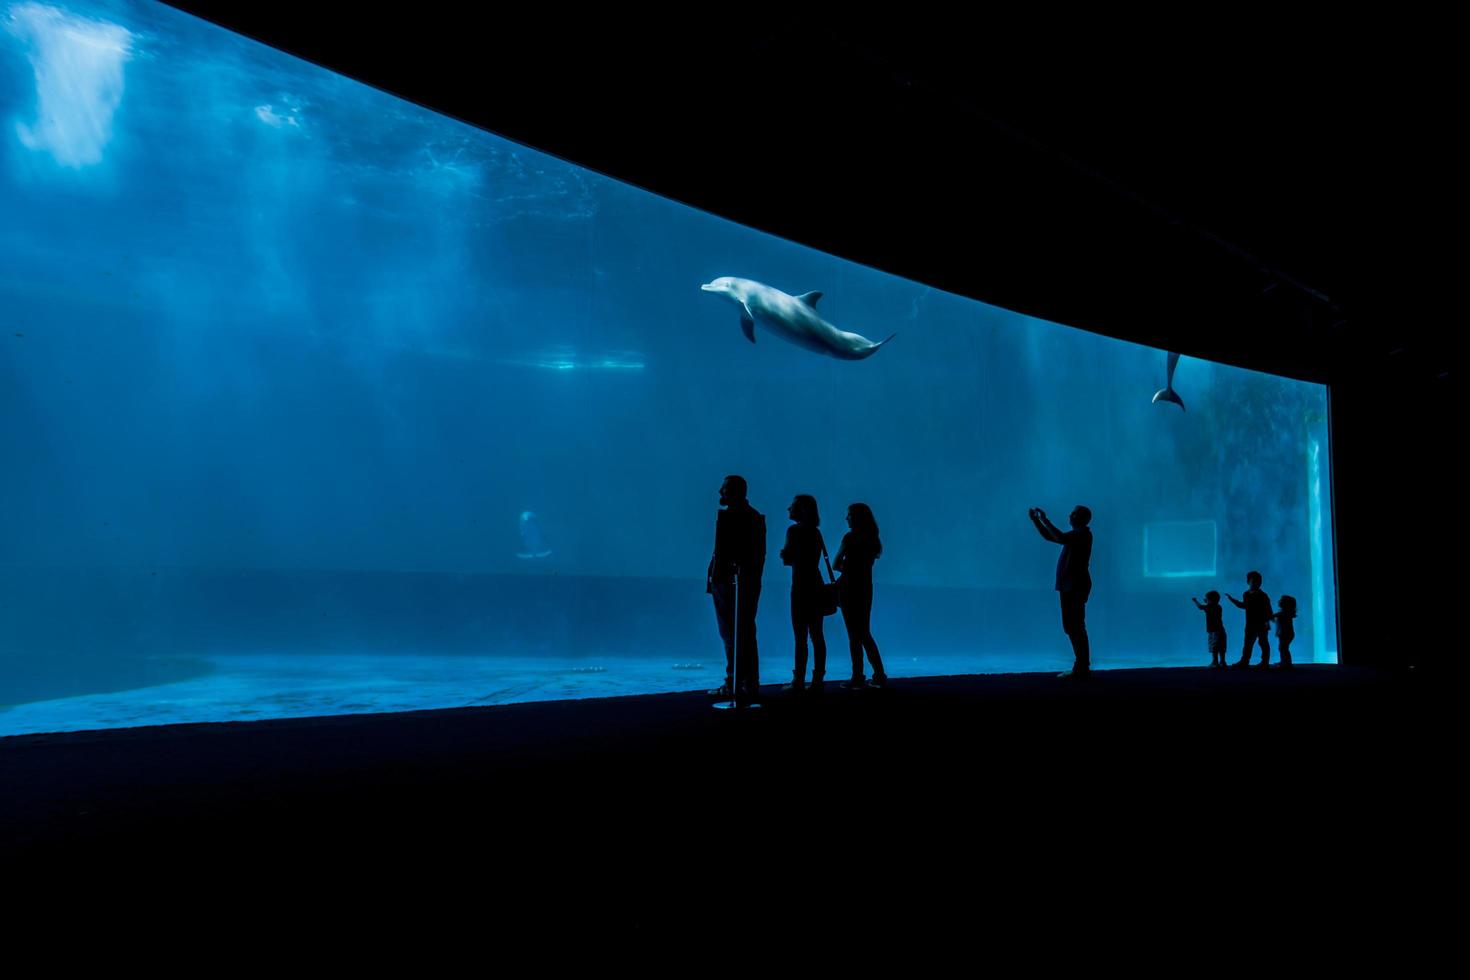 GENOA, ITALY, JUNE 2, 2015 - Unidentified people at Genoa aquarium. The Aquarium of Genoa is the largest aquarium in Italy and among the largest in Europe. photo